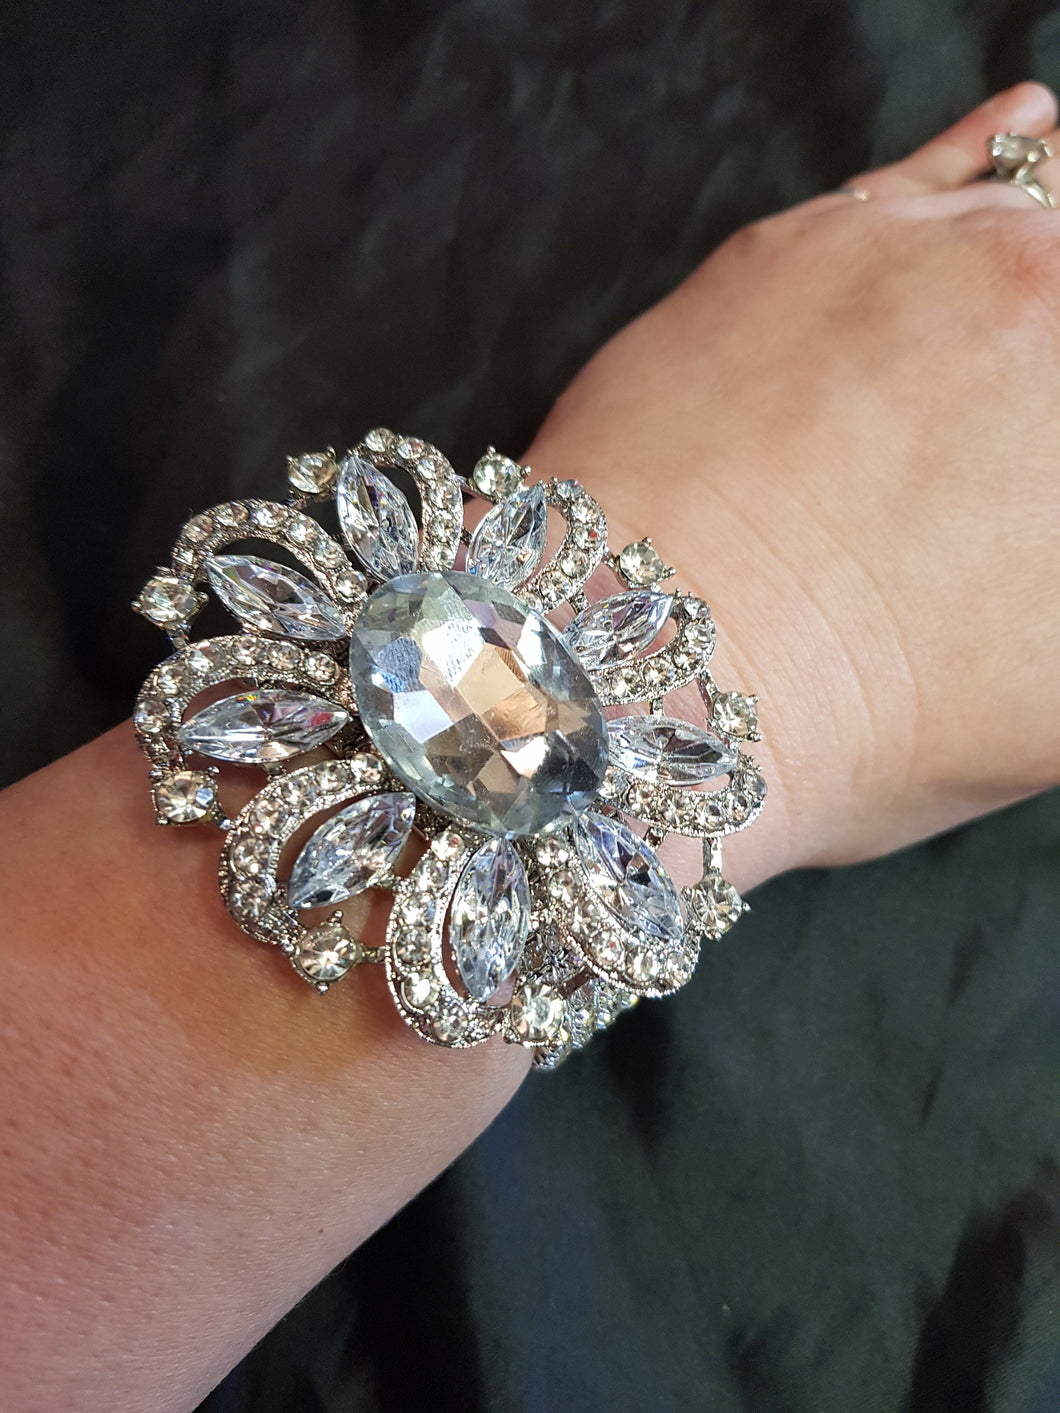 Wrist corsage ,Crystal rhinestone OVAL Wedding Cuff, bridesmaid Bracelet by Crystal wedding uk